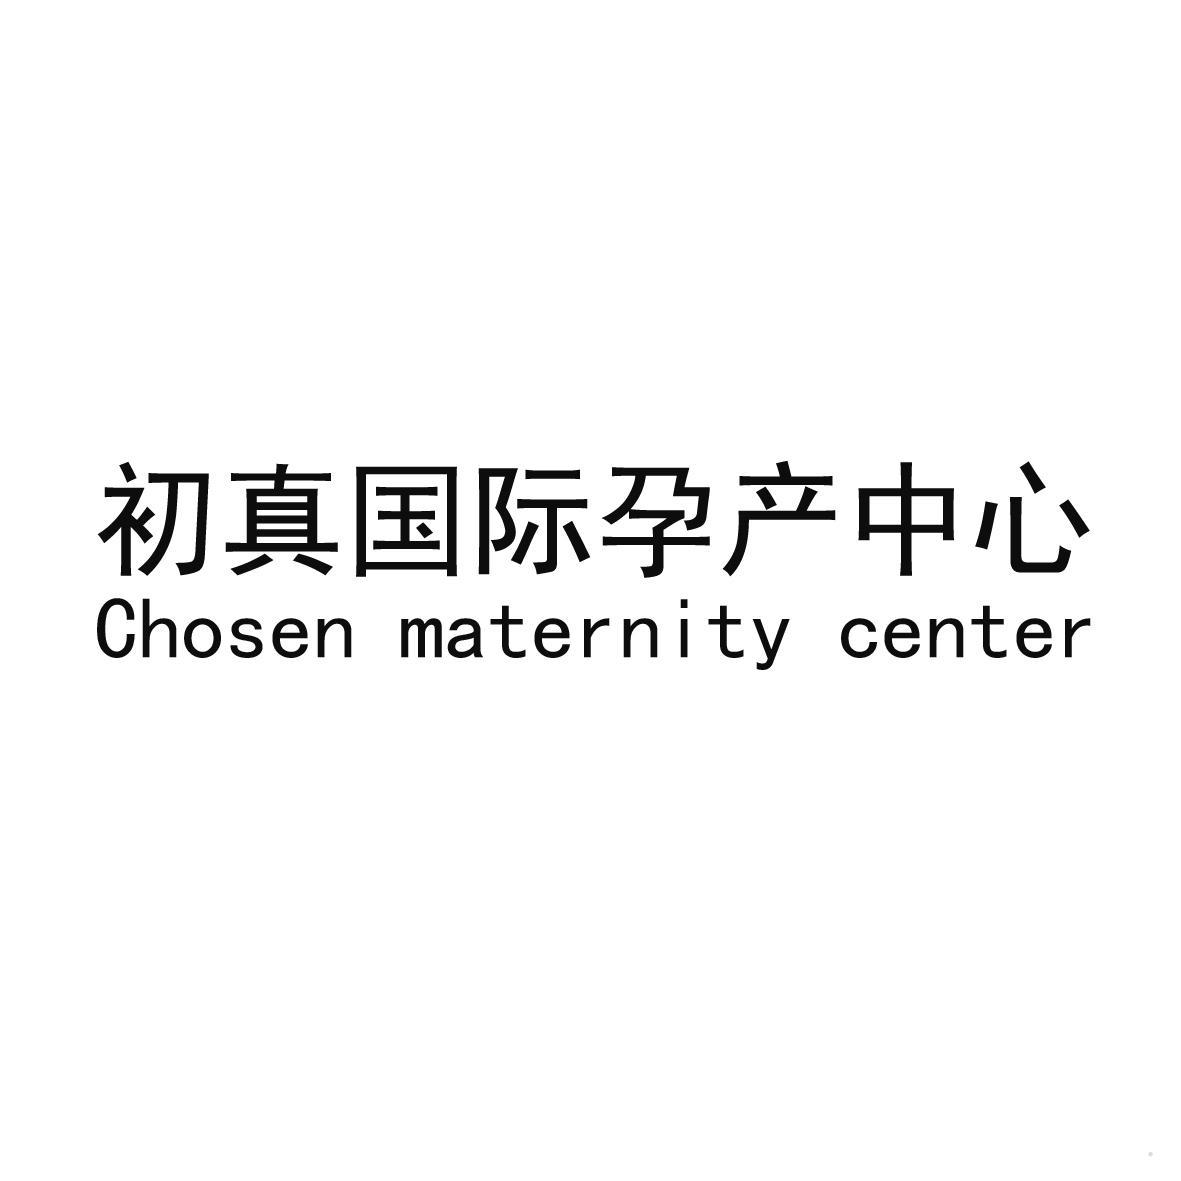 初真国际孕产中心 CHOSEN MATERNITY CENTER